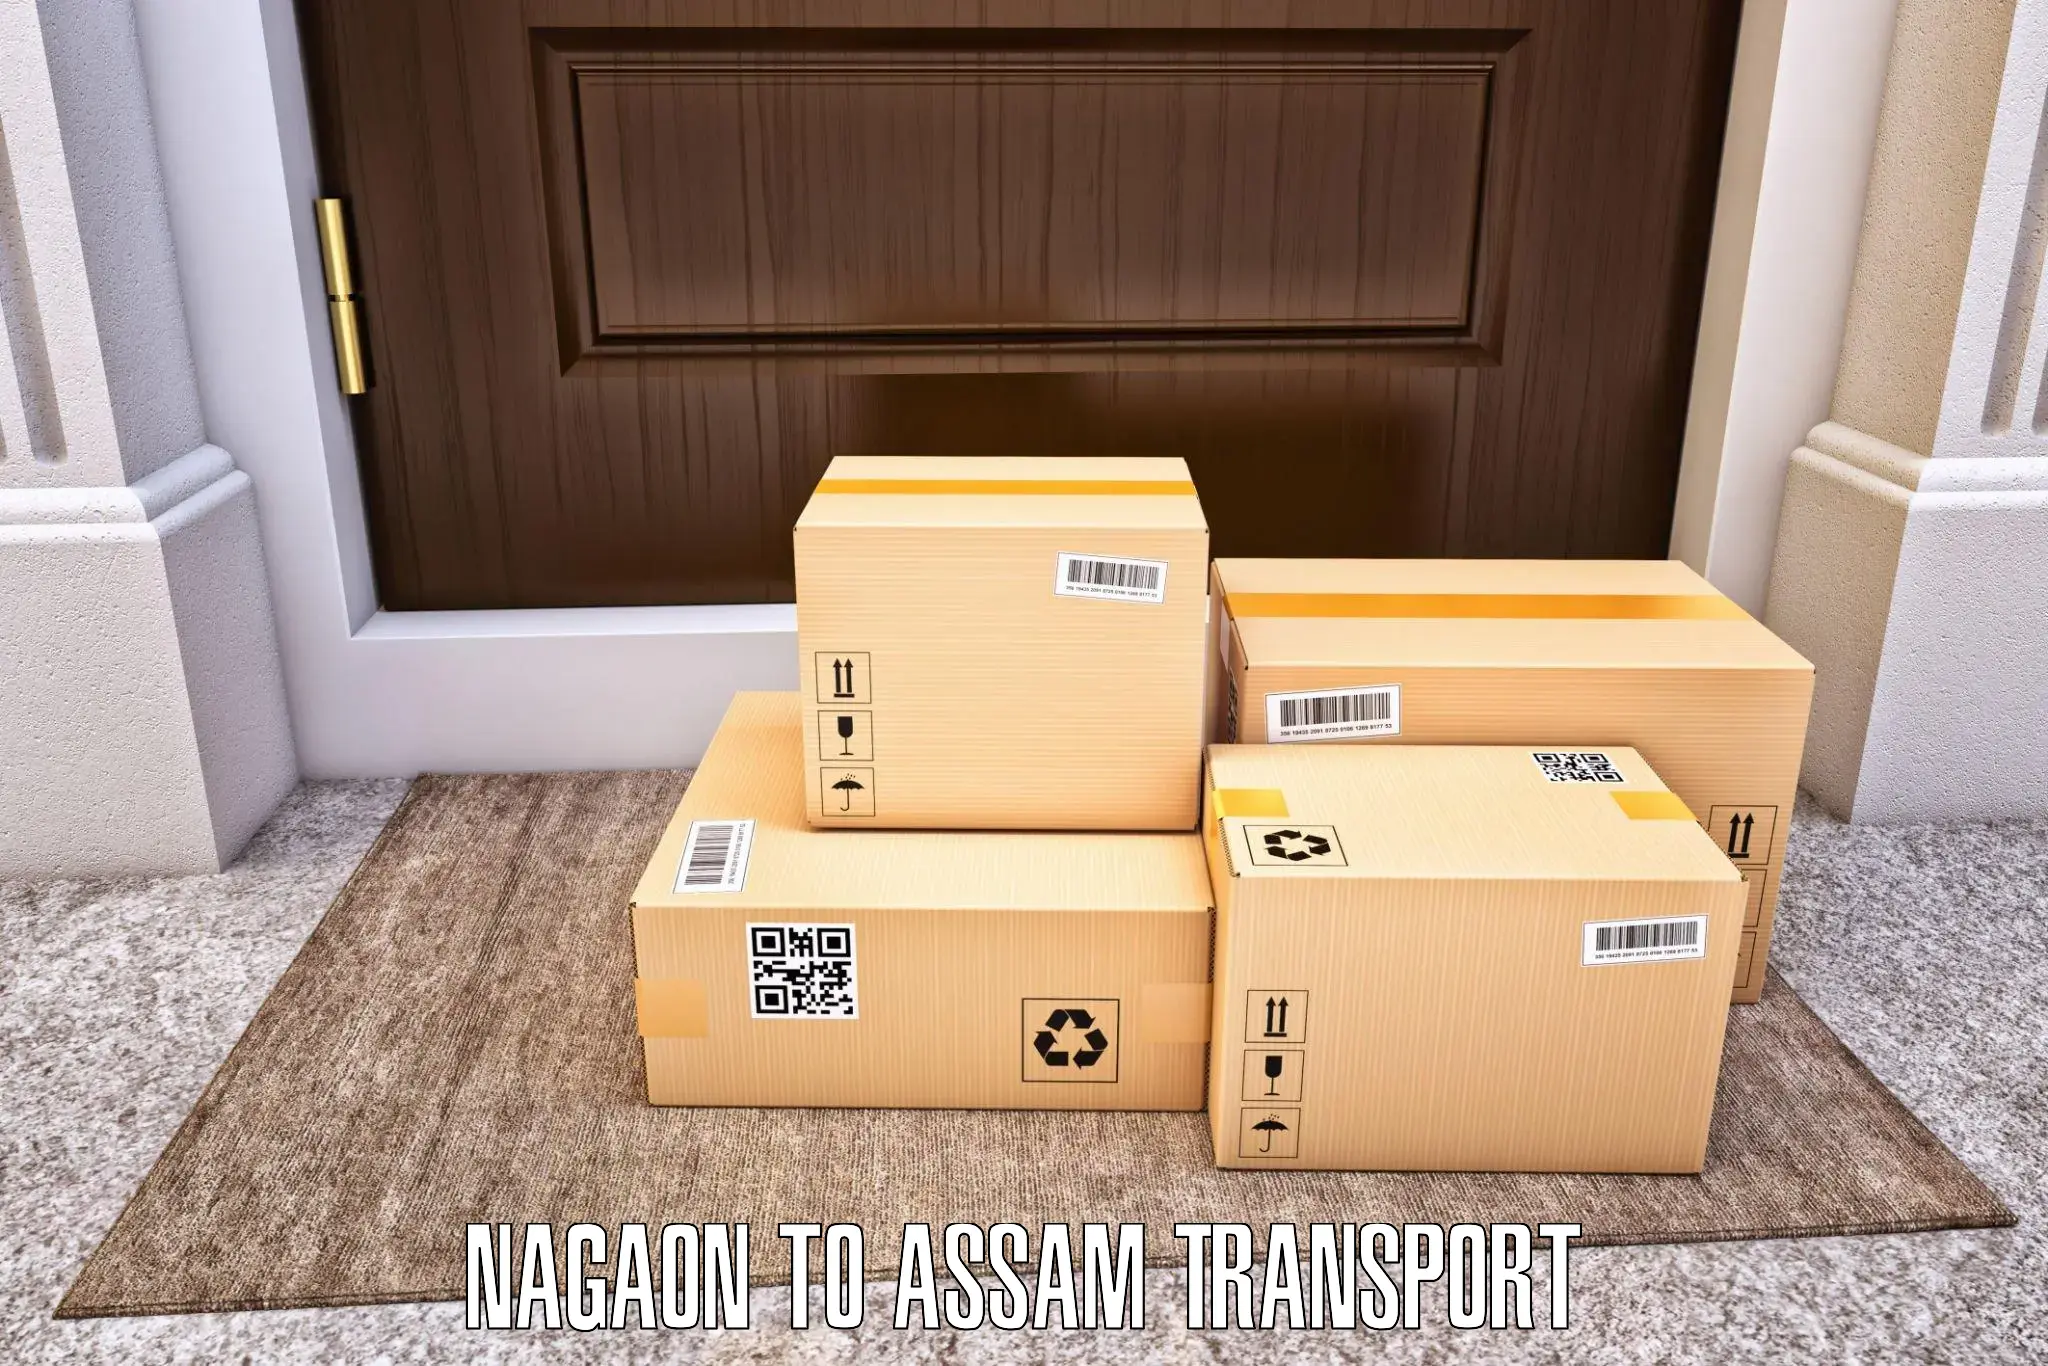 Container transport service Nagaon to Darranga Mela